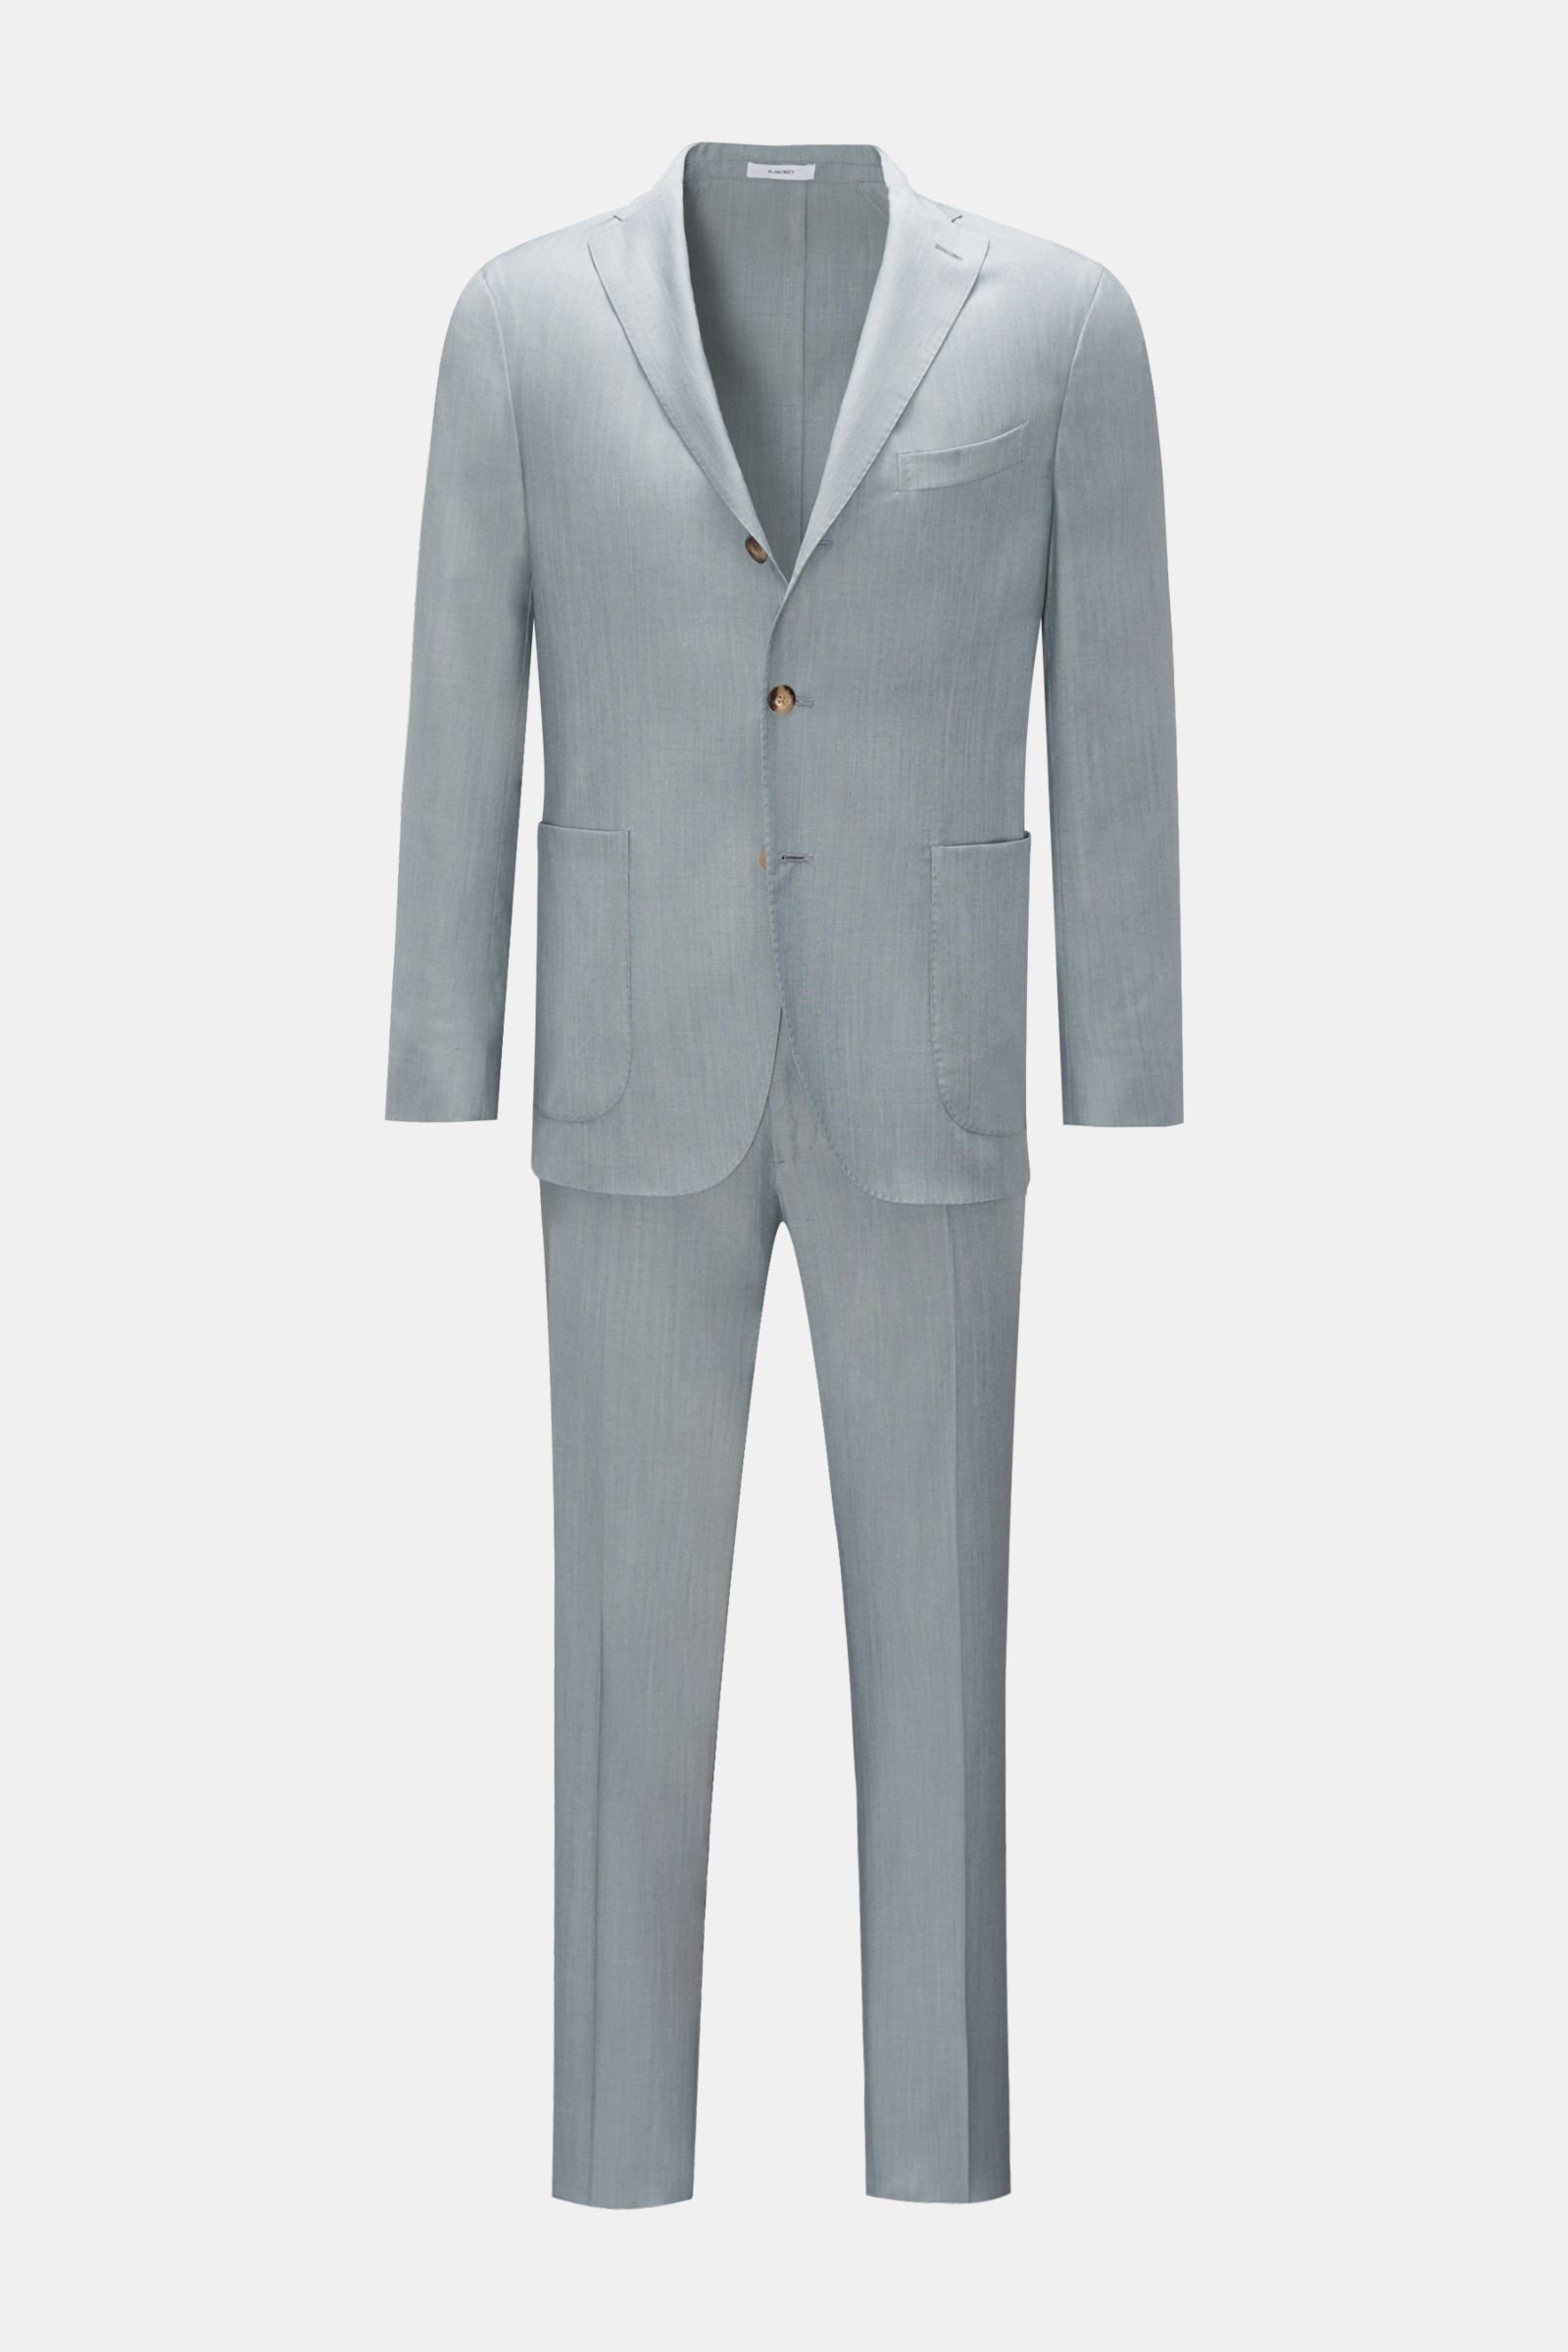 BOGLIOLI suit 'K.Jacket' light grey | BRAUN Hamburg